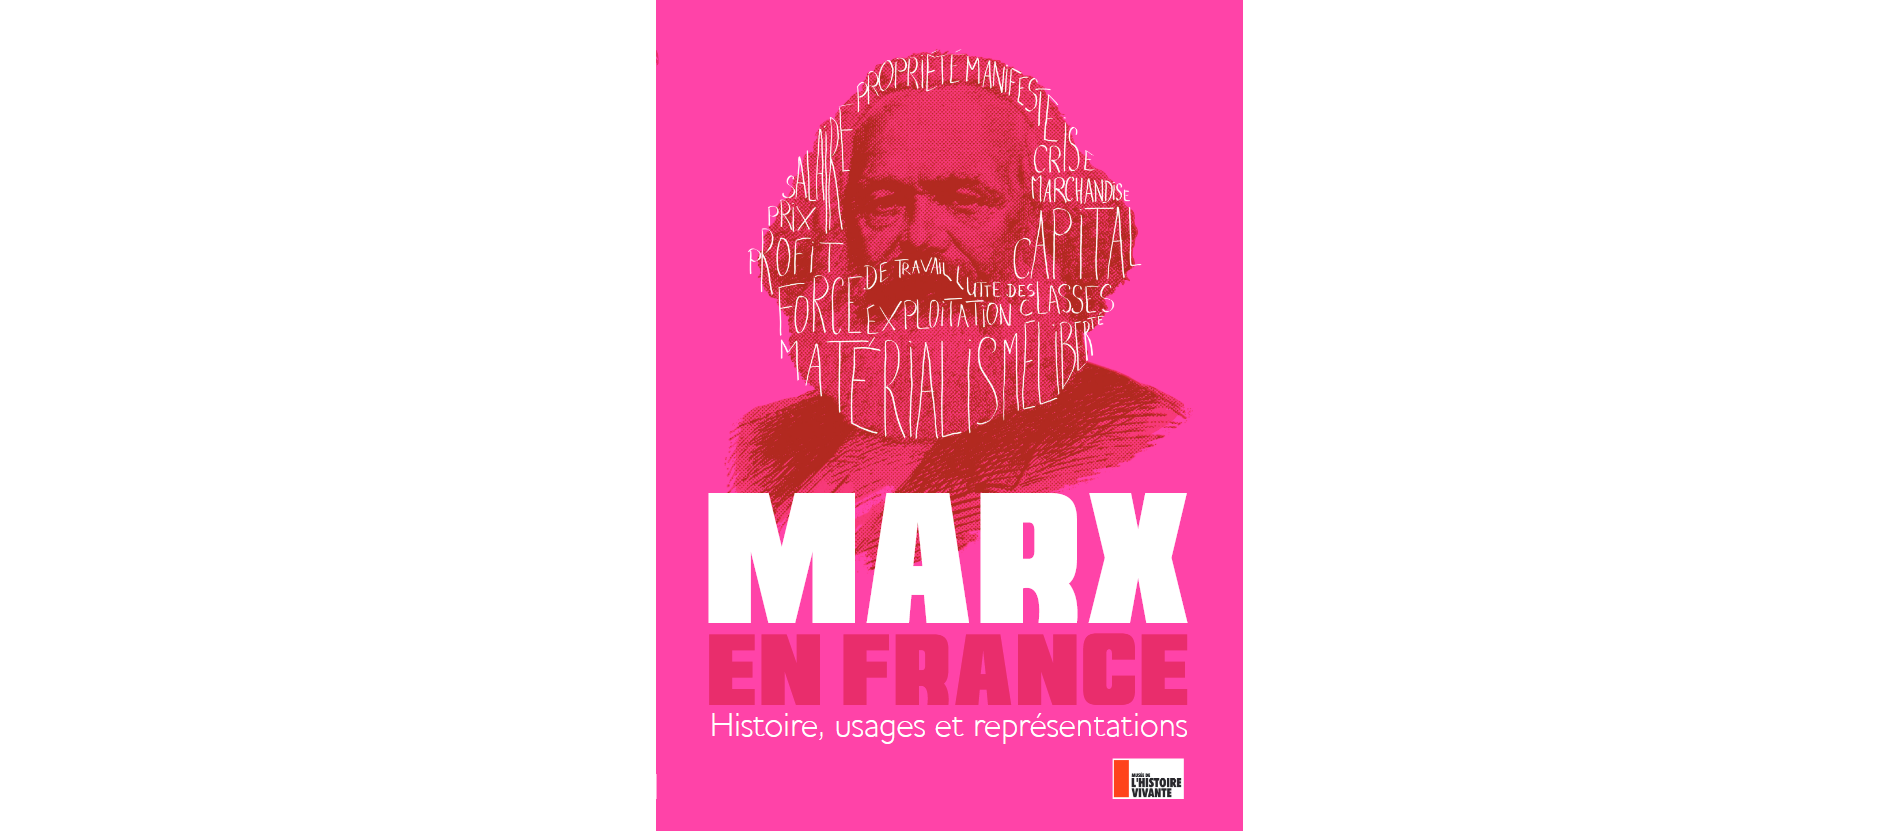 Autour de l’anniversaire de la mort de Marx